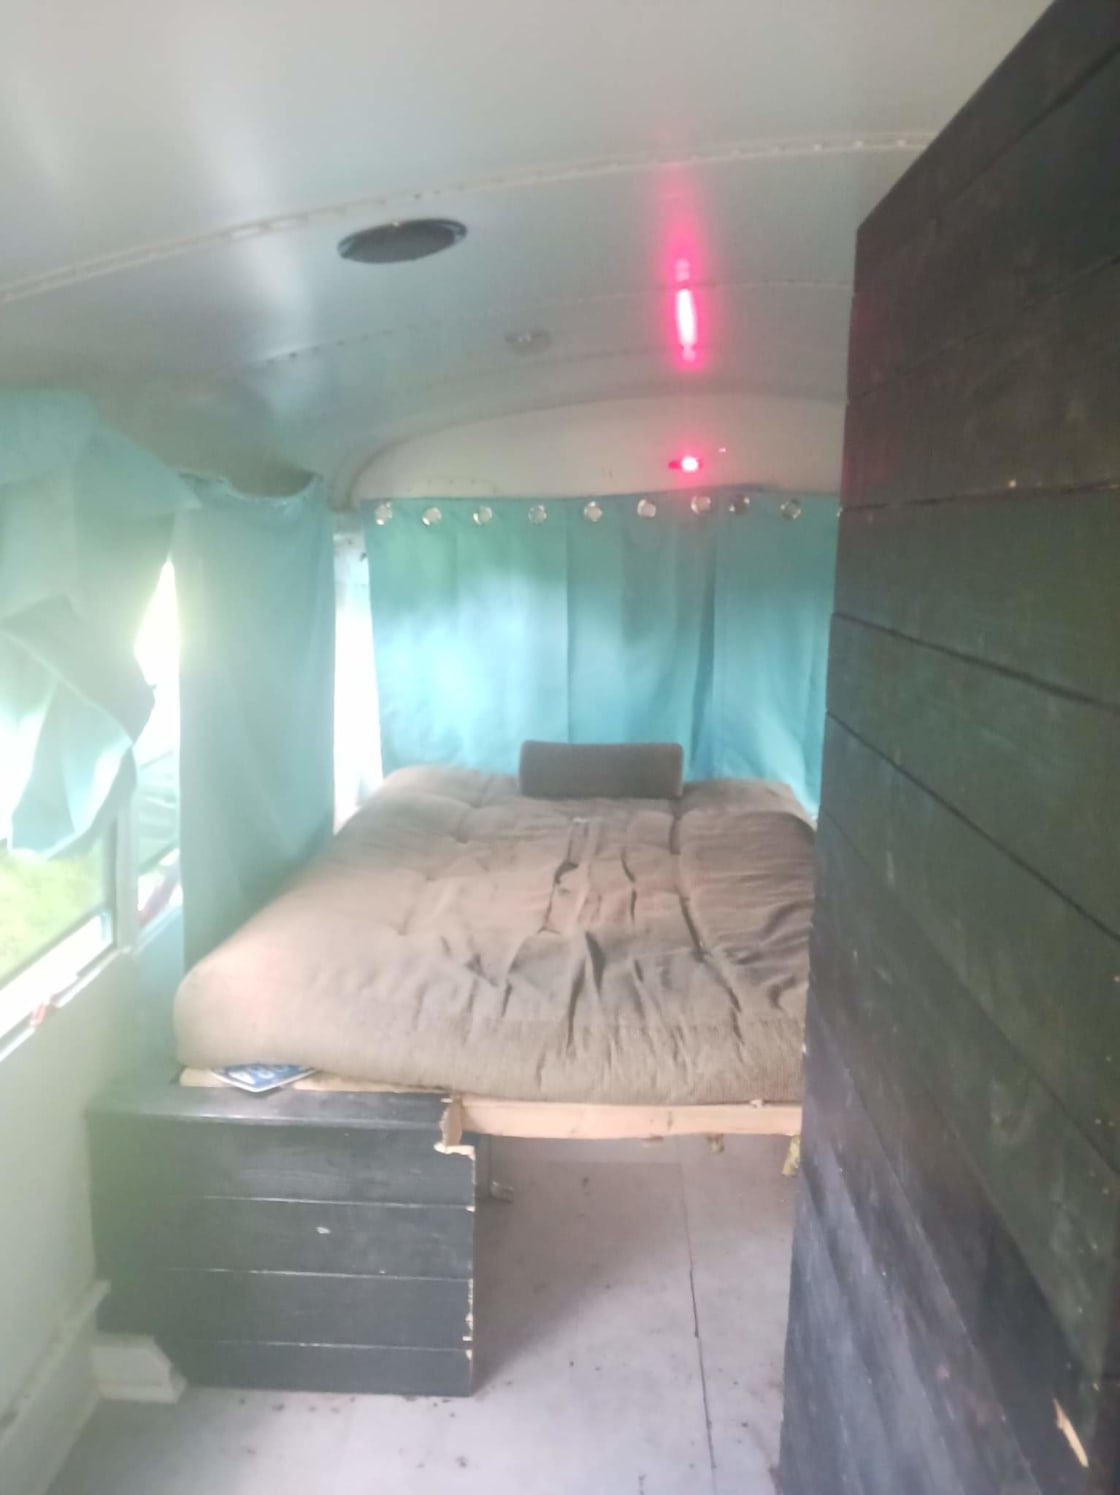 Skoolie Camping in The Ocean Bus